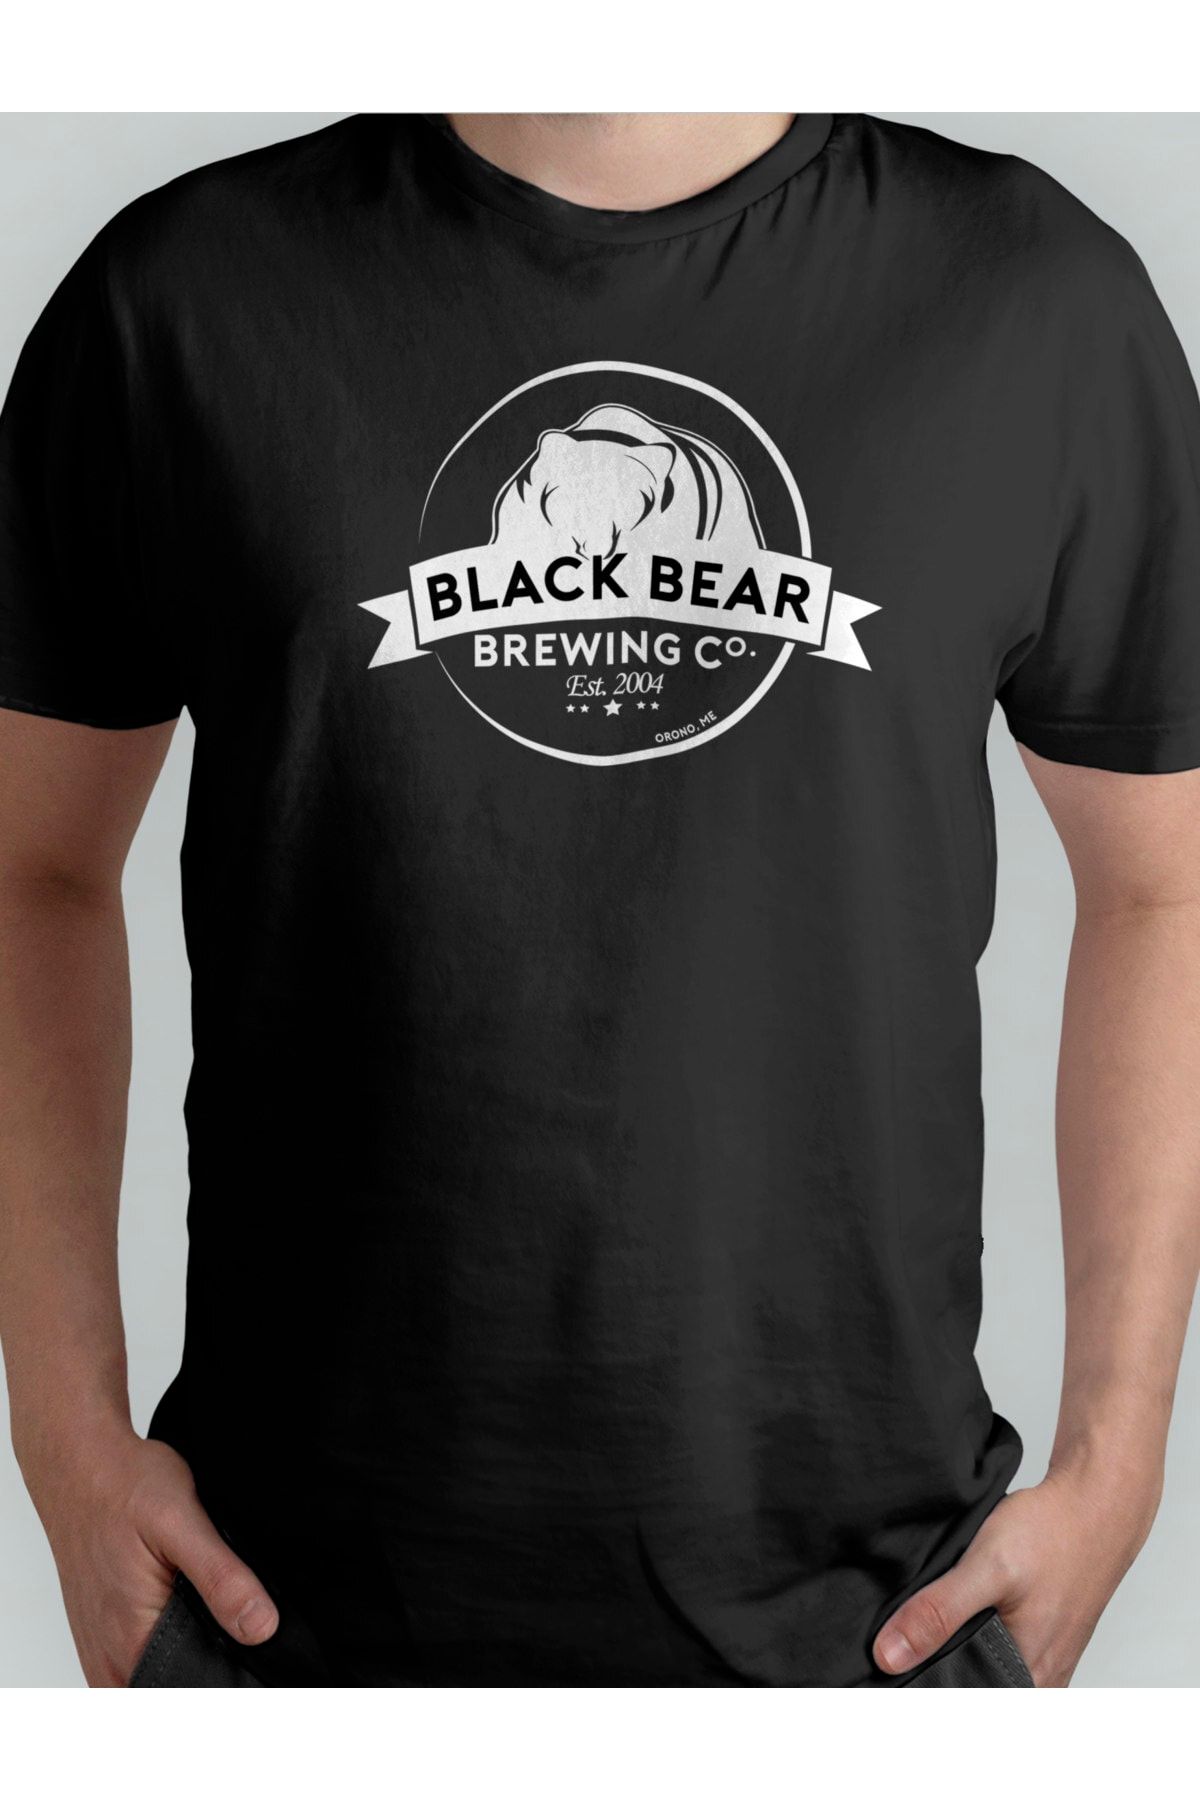 Xanimal Baskılı Black Bear Büyük Beden Pamuklu T-shirt 3xl 4xl 5xl 6xl 7xl